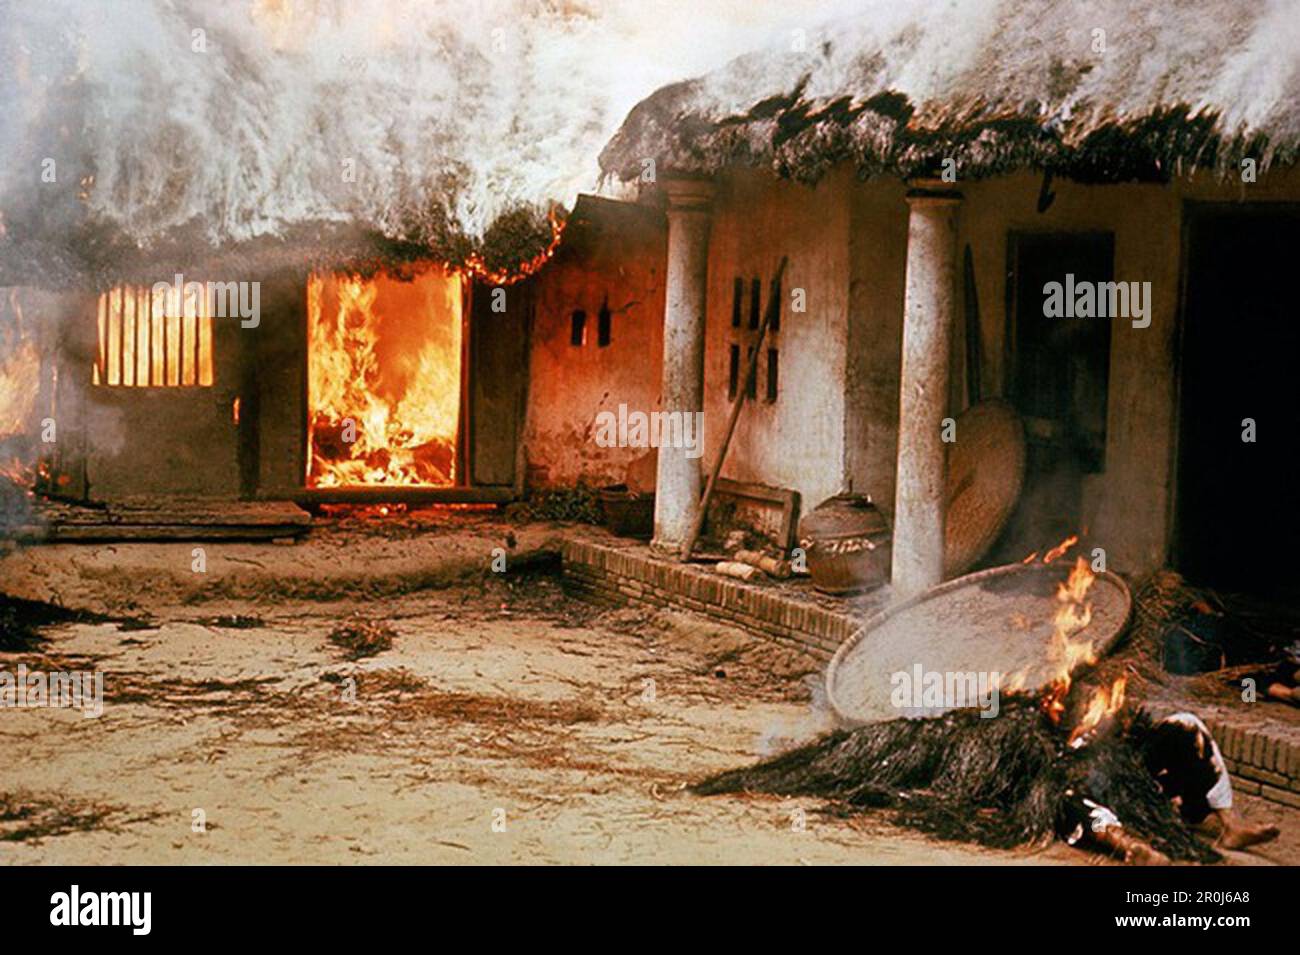 Cadaveri fuori da una casa in fiamme nel villaggio vietnamita di My Lai dopo che circa 500 civili furono massacrati dalle truppe americane durante la guerra del Vietnam. Foto Stock